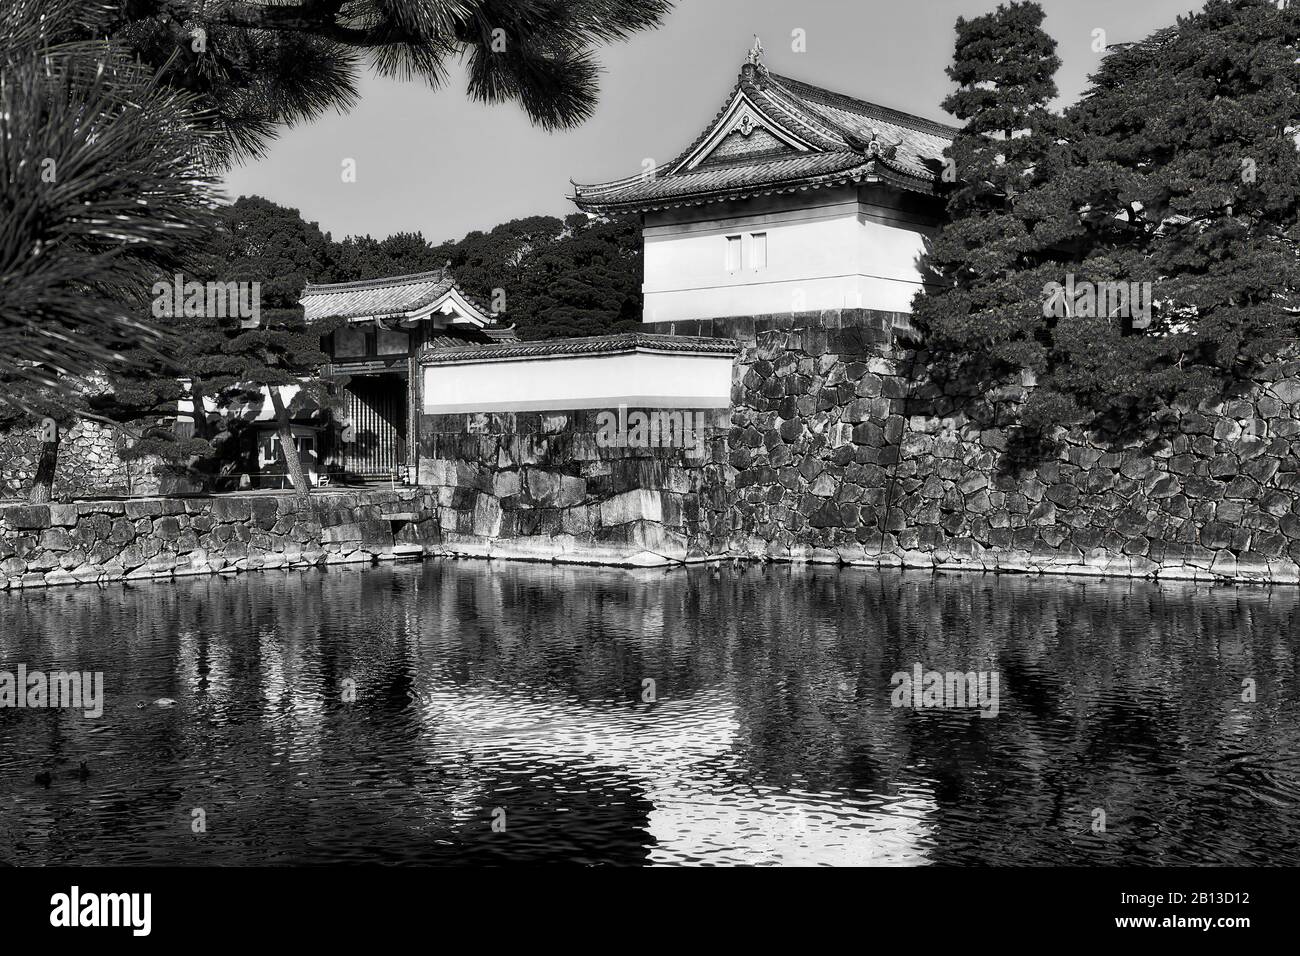 Tours historiques de couleur noire sur des murs en pierre autour du palais impérial dans la ville de Tokyo. Réflexion dans la moat remplie d'eau. Banque D'Images